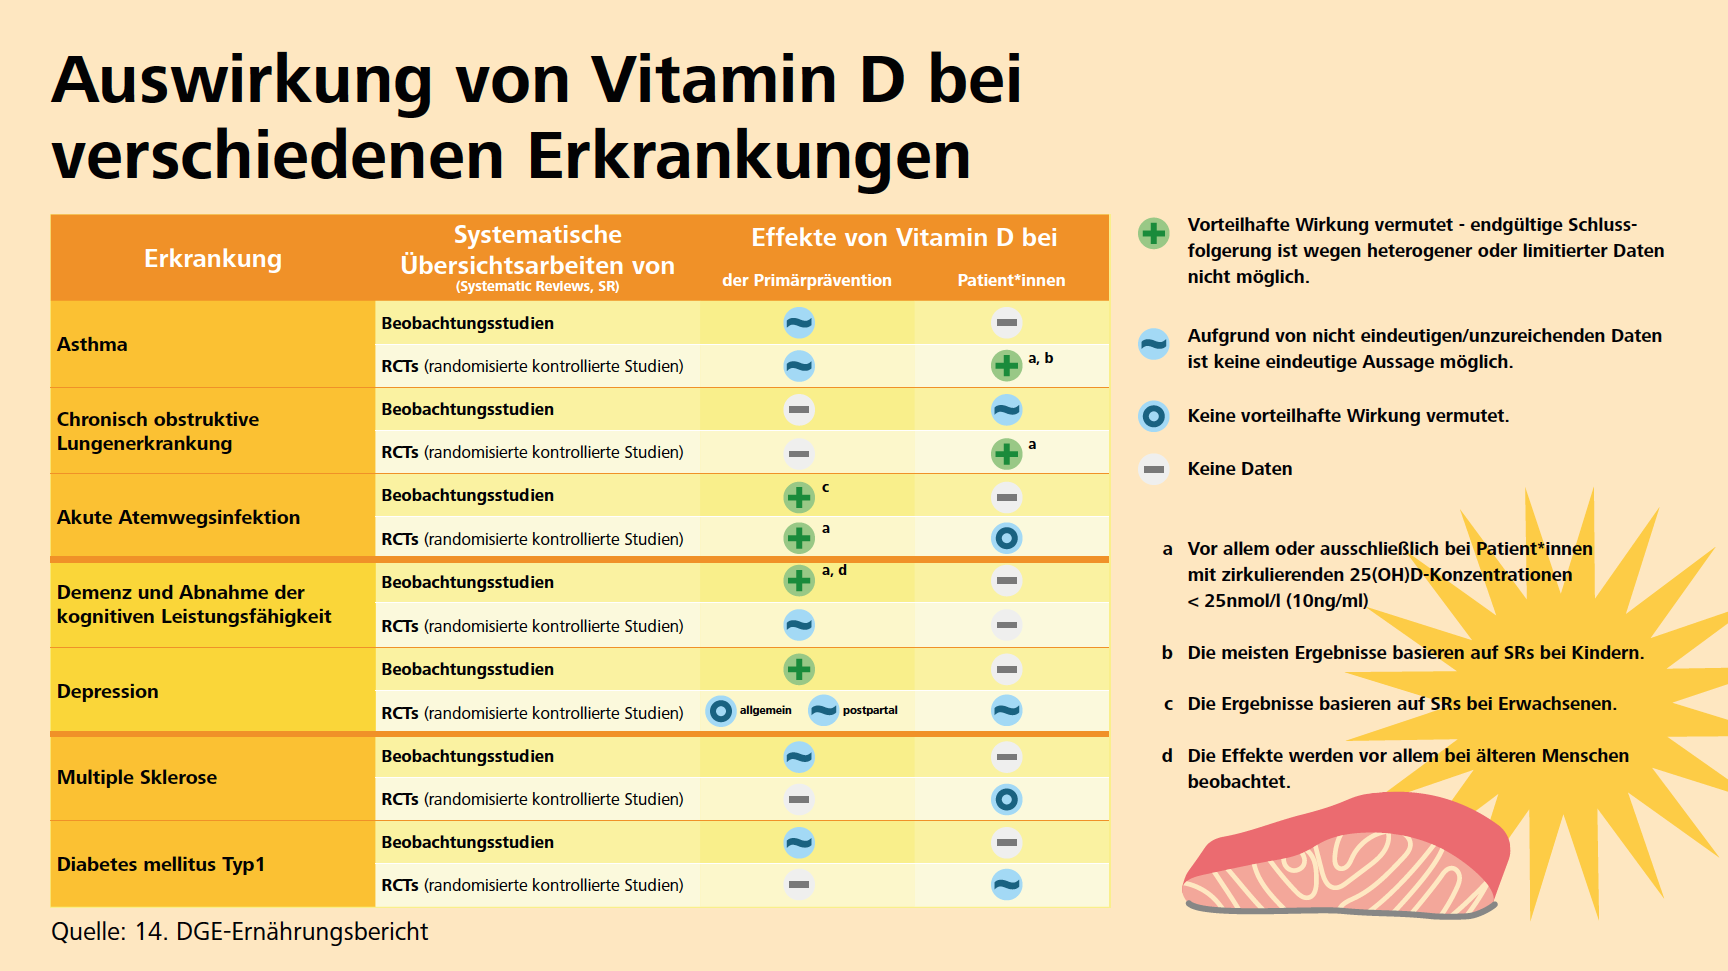 Auswirkung von Vitamin D bei verschiedenen Erkrankungen